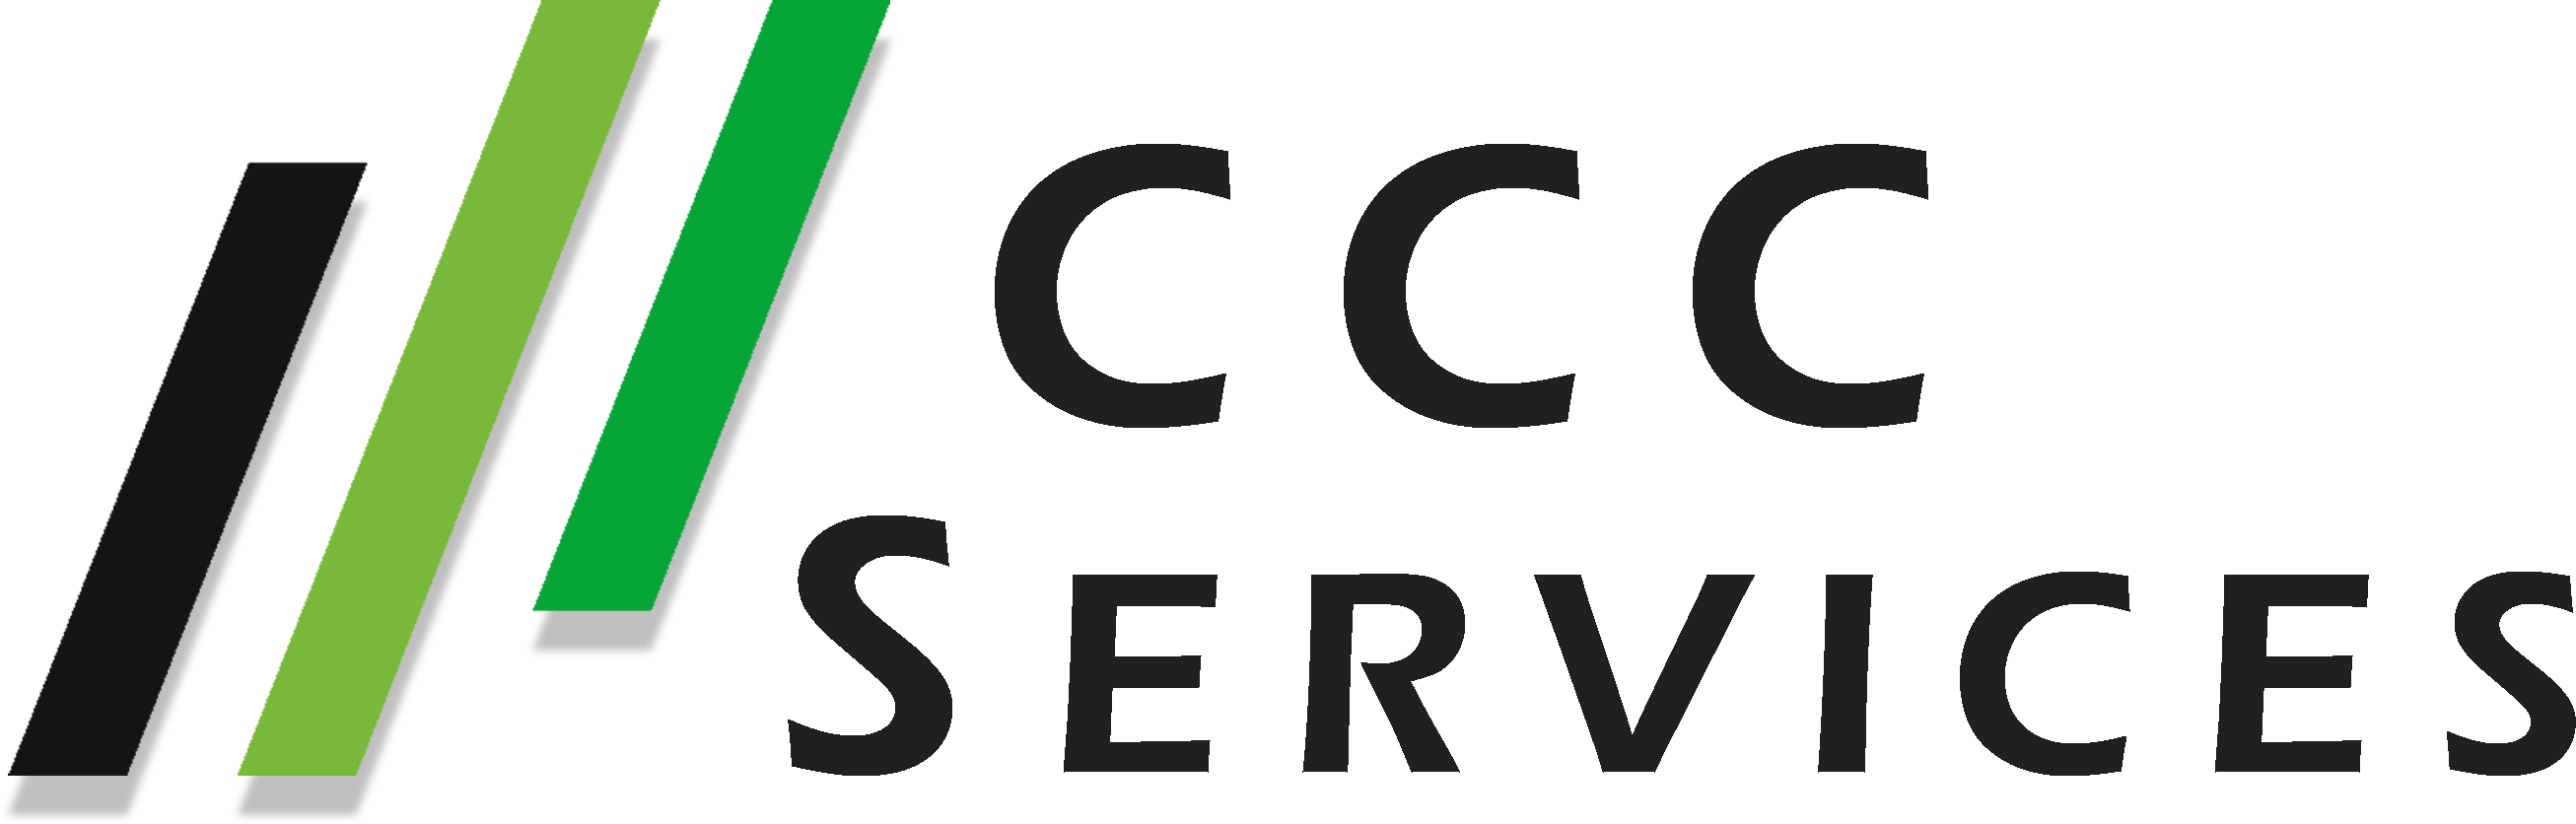 CCC Services logo dark